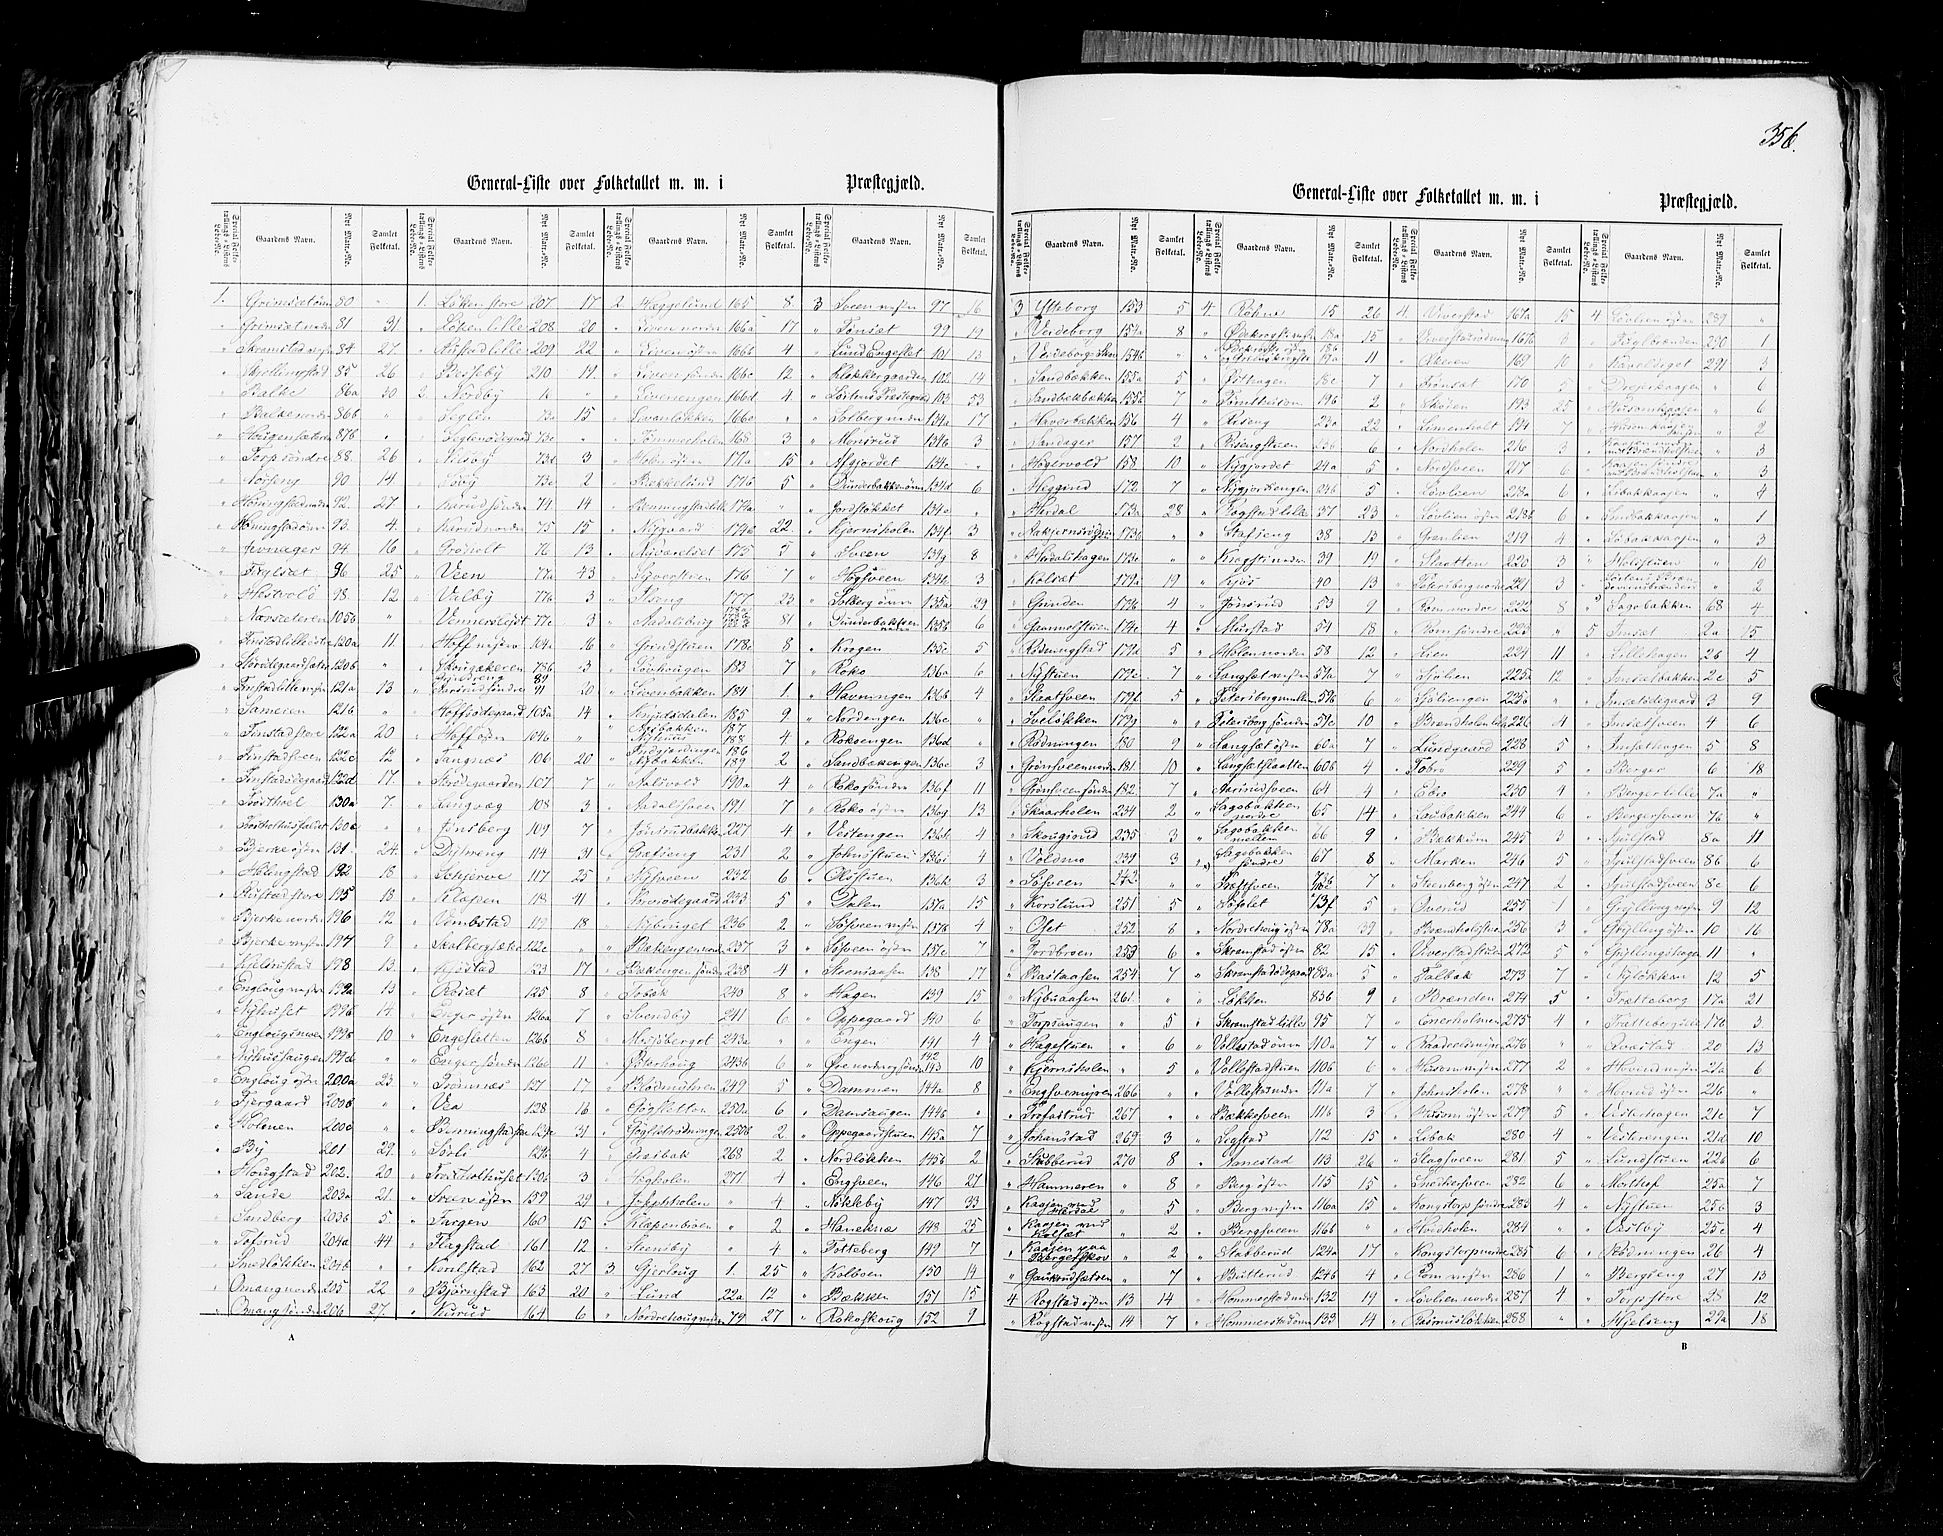 RA, Census 1855, vol. 1: Akershus amt, Smålenenes amt og Hedemarken amt, 1855, p. 356